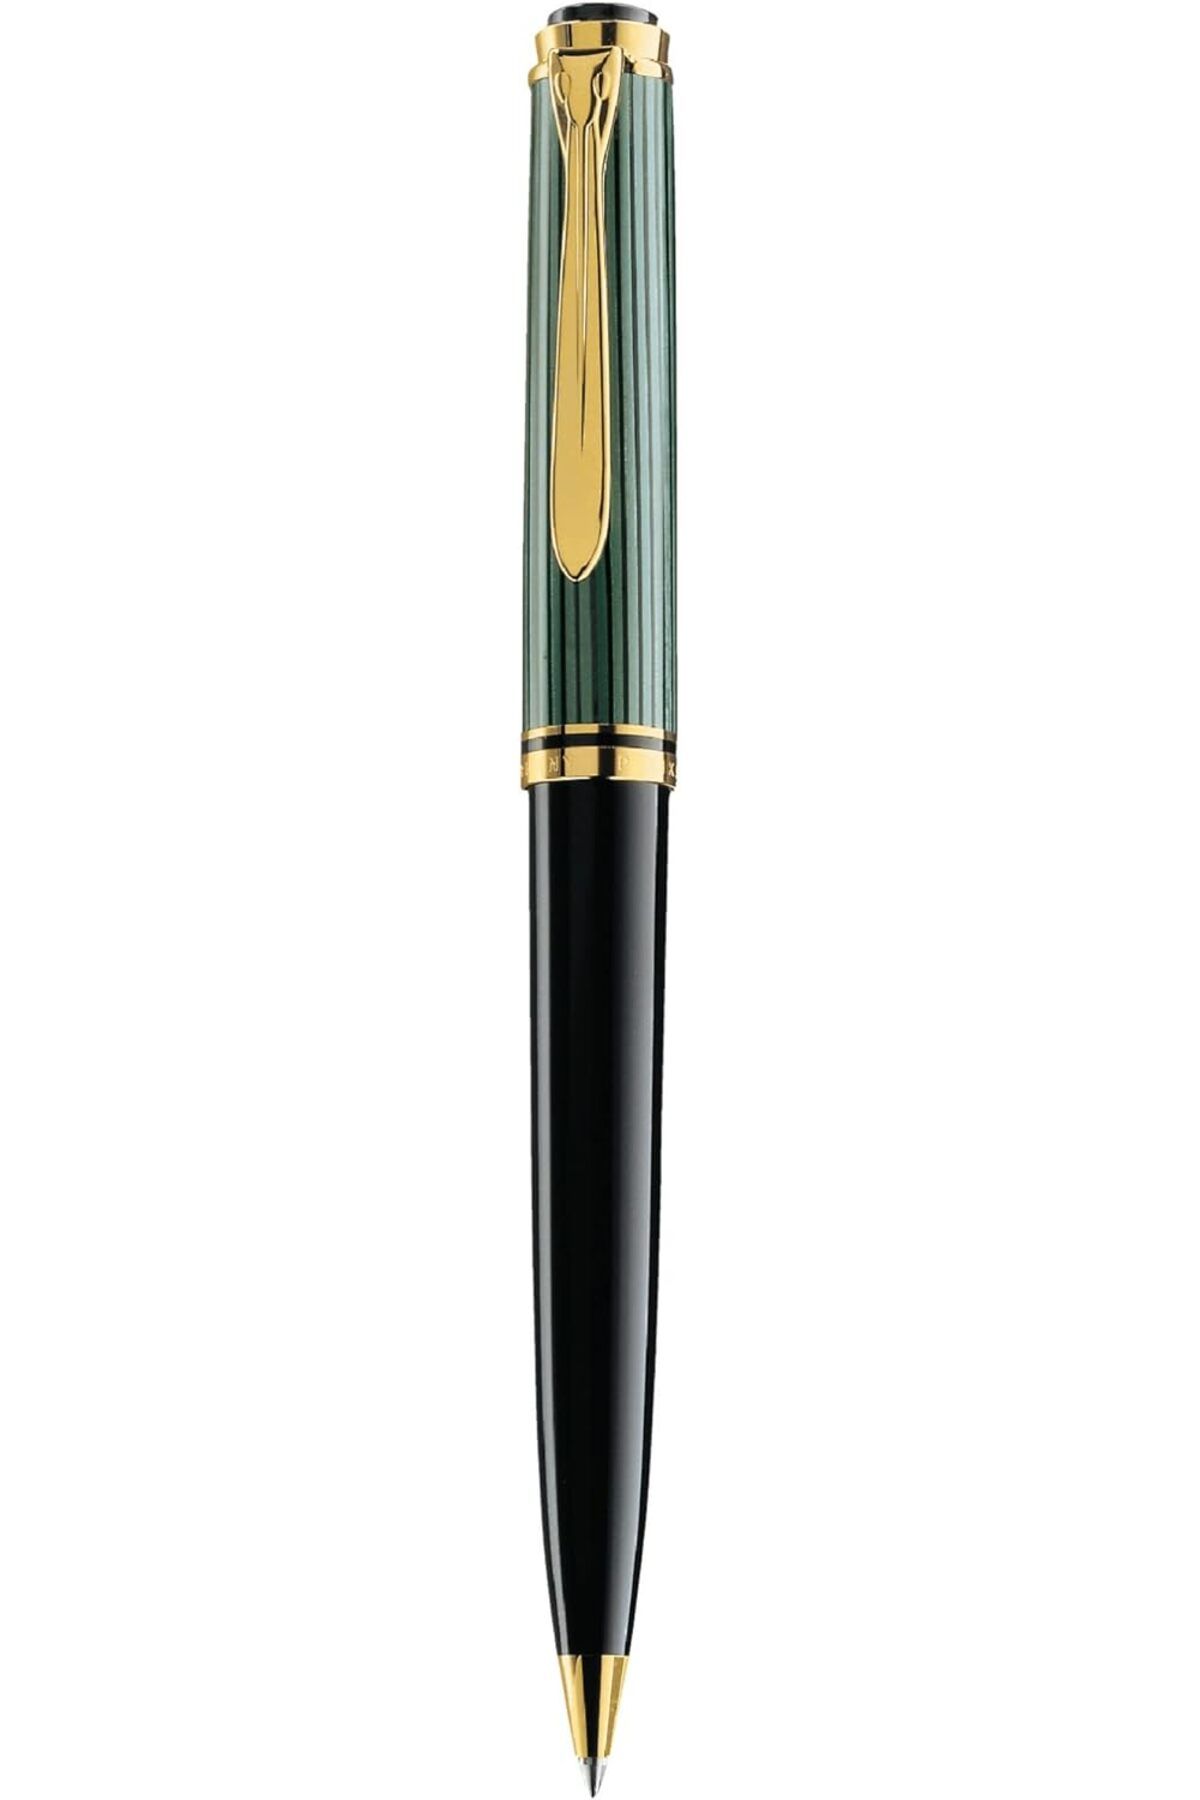 Pelikan K800 Yeşil Tükenmez Kalem